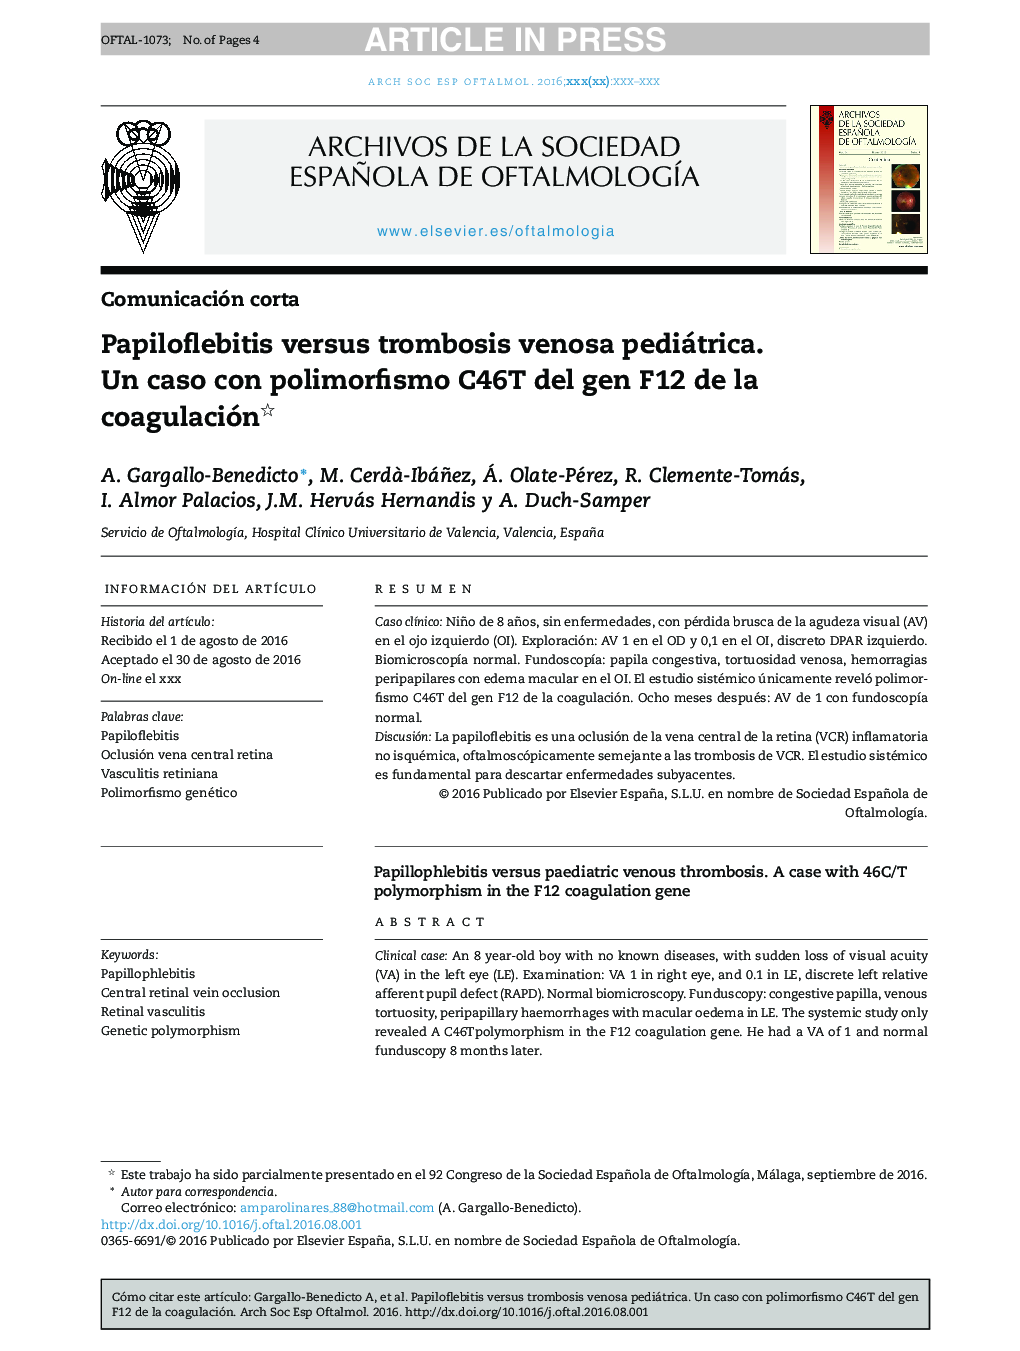 Papiloflebitis versus trombosis venosa pediátrica. Un caso con polimorfismo C46T del gen F12 de la coagulación